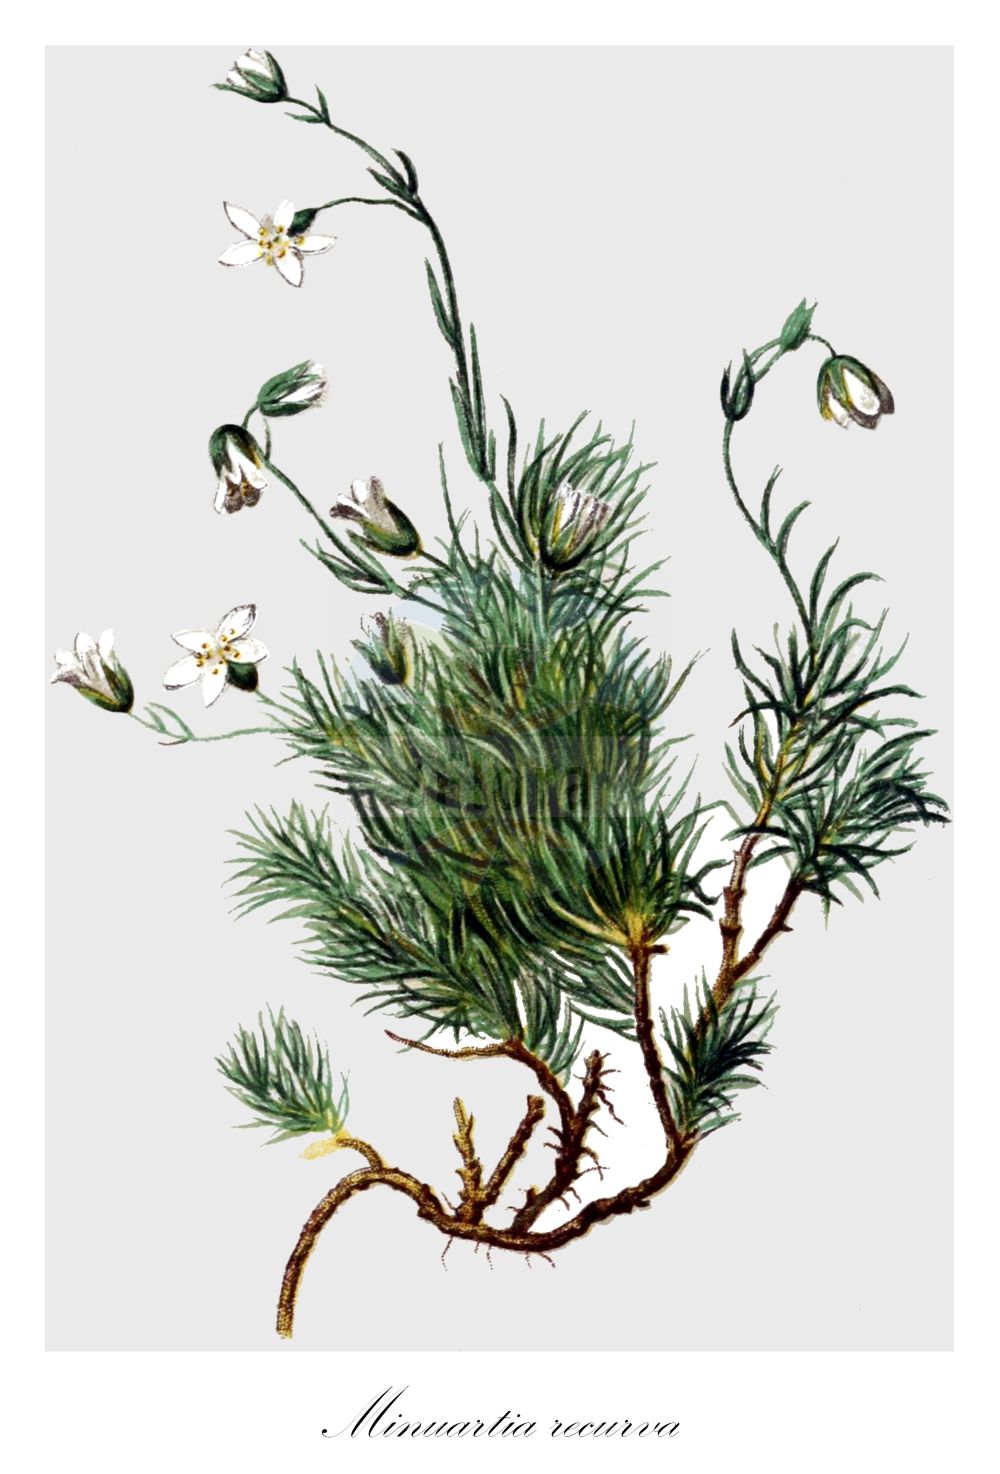 Historische Abbildung von Minuartia recurva (Recurved Sandwort). Das Bild zeigt Blatt, Bluete, Frucht und Same. ---- Historical Drawing of Minuartia recurva (Recurved Sandwort). The image is showing leaf, flower, fruit and seed.(Minuartia recurva,Recurved Sandwort,Alsine recurva,Arenaria recurva,Minuartia recurva,Minuartia,Miere,Stitchwort,Caryophyllaceae,Nelkengewächse,Pink family,Blatt,Bluete,Frucht,Same,leaf,flower,fruit,seed,Hartinger & von Dalla Torre (1806f))